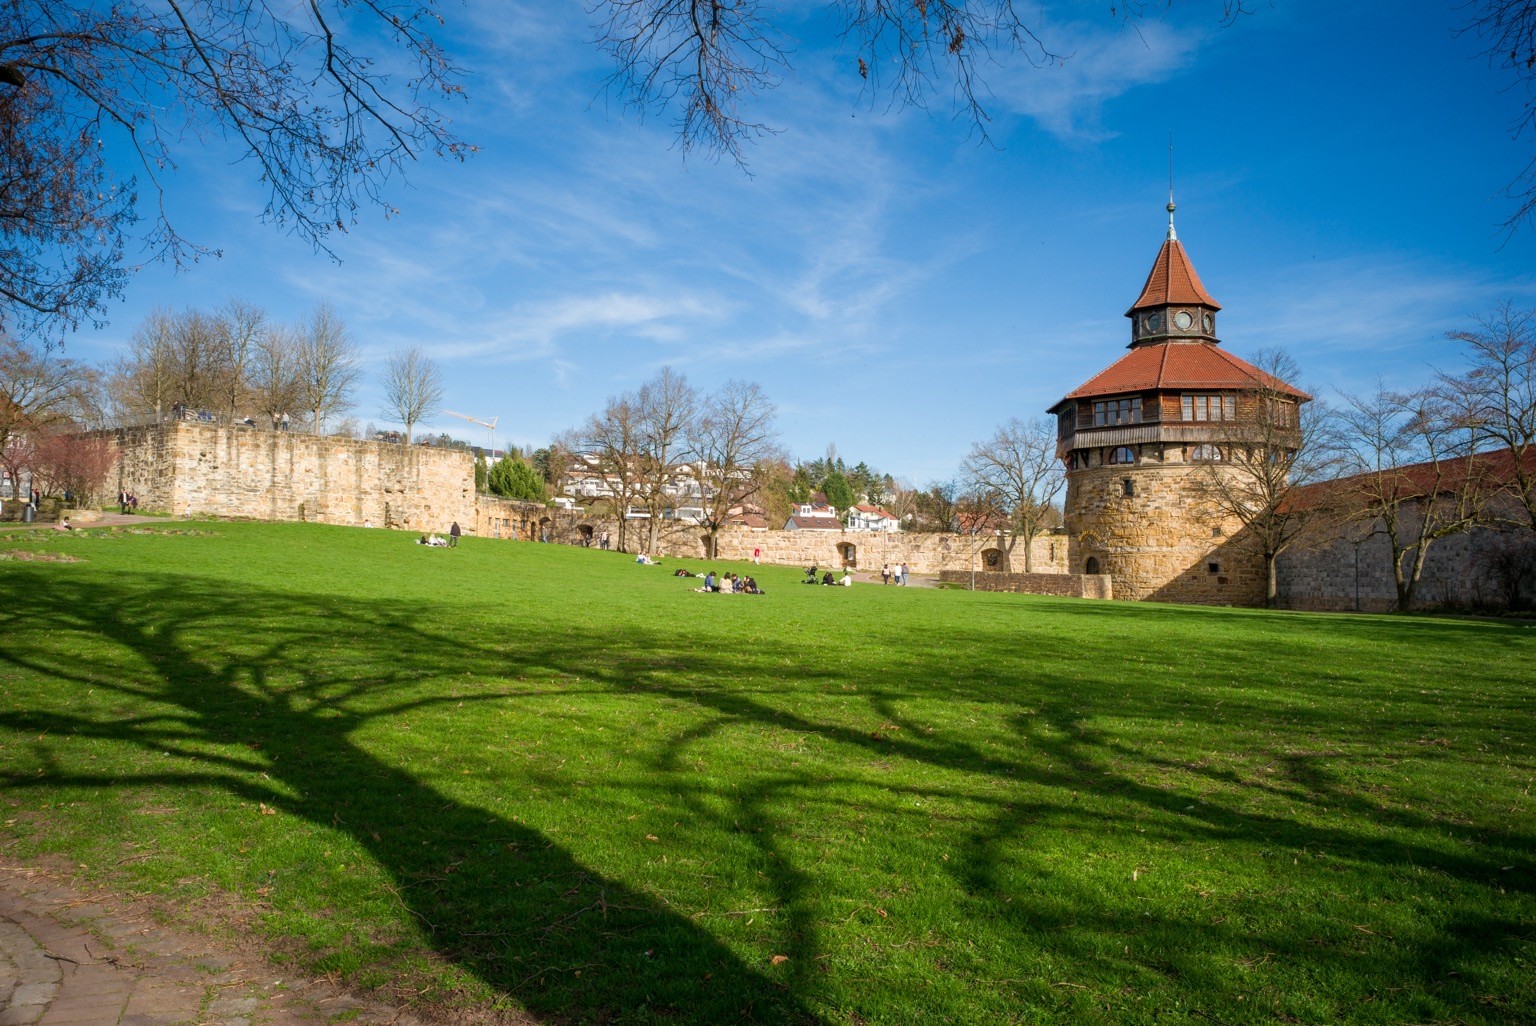 Das Foto zeigt den Burghof in #Esslingen mit dem „Dicken Turm“ im rechten Bildbereich und dem Kanonenhügel inks. Dazwischen liegt eine grüne Wiese, auf der Menschen herumliegen.